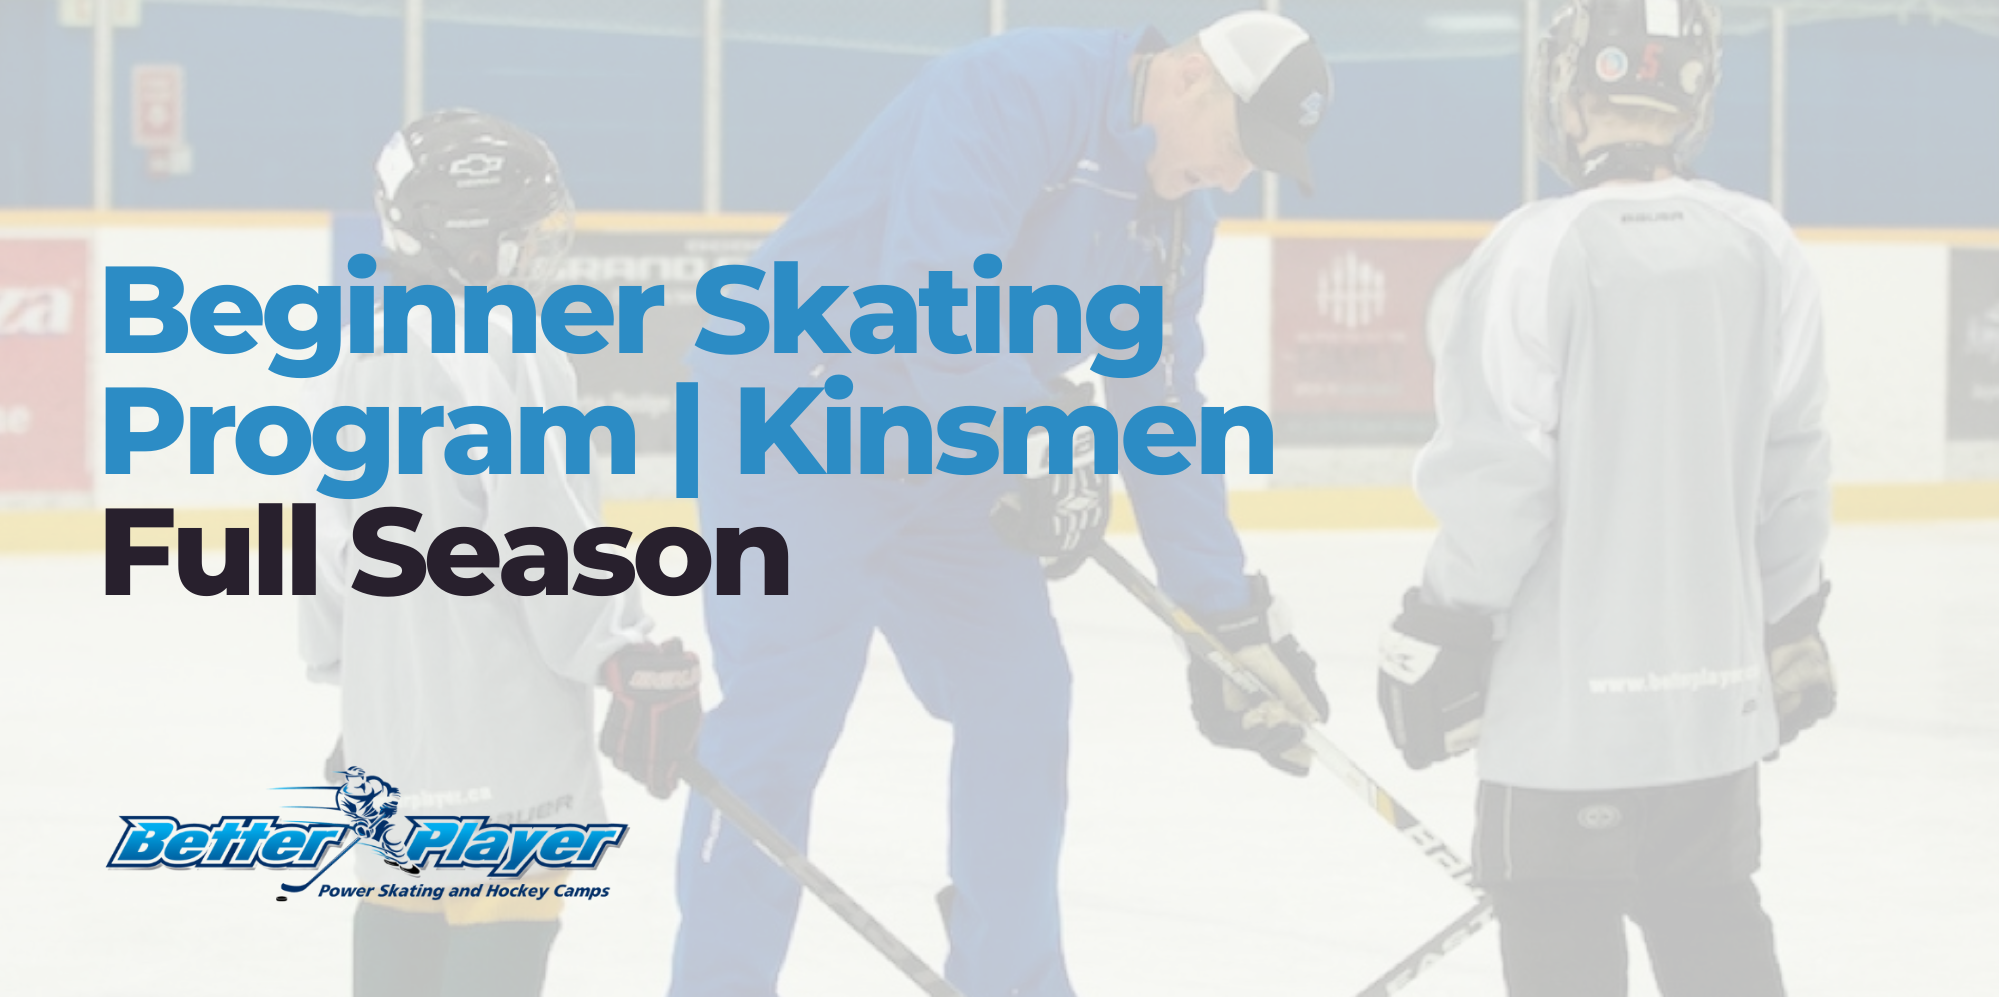 Beginner Skating Program Kinsmen | Full Season